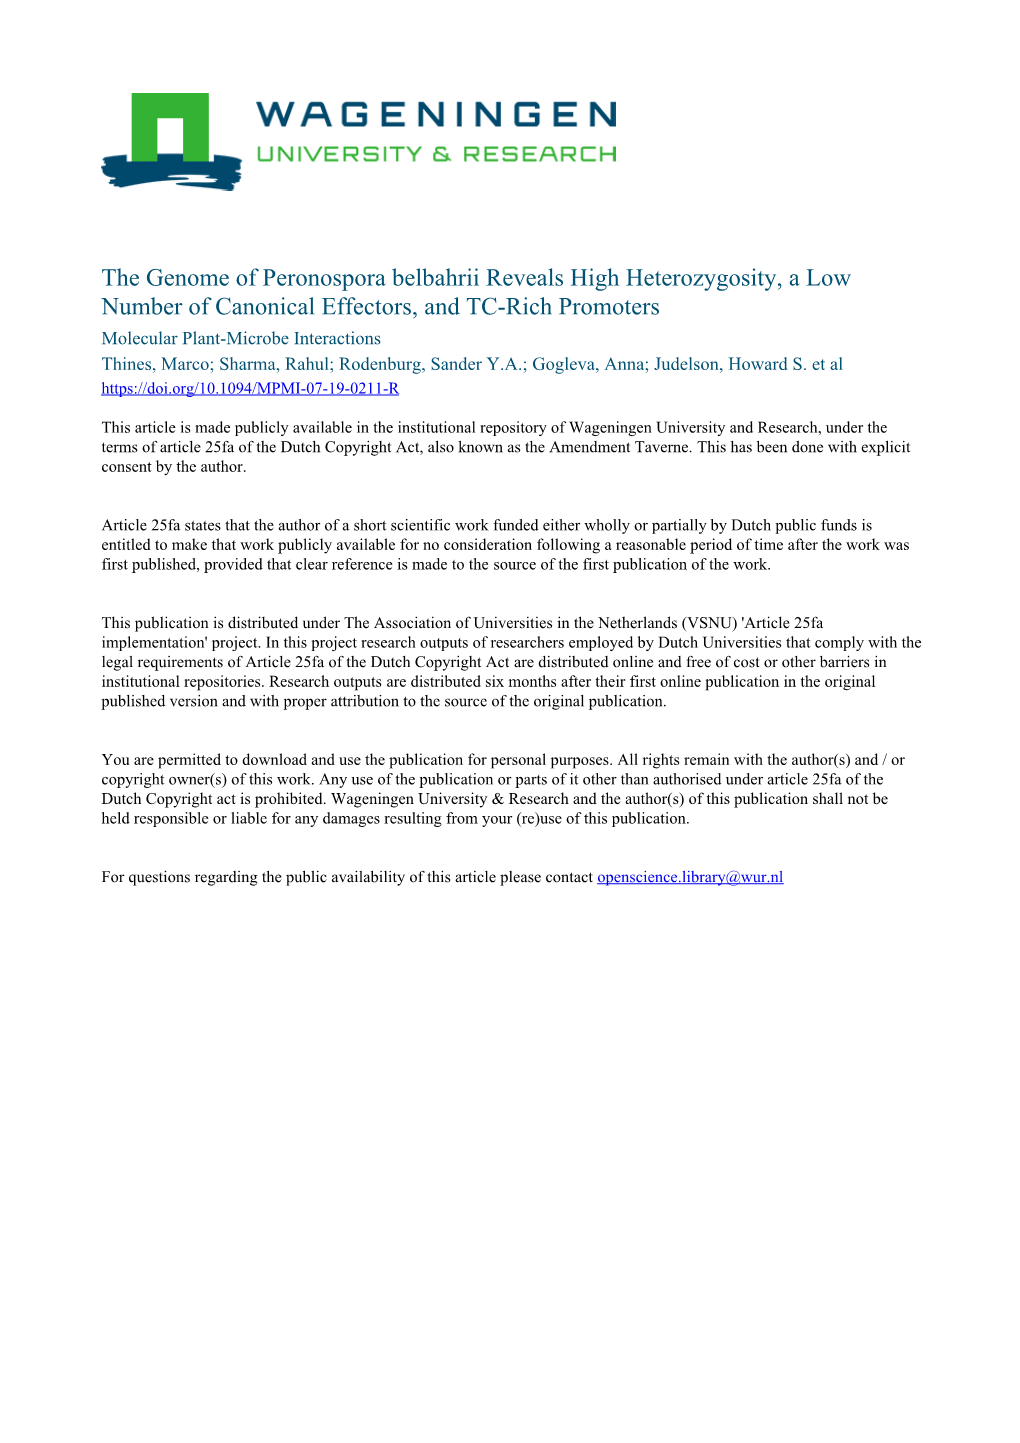 The Genome of Peronospora Belbahrii Reveals High